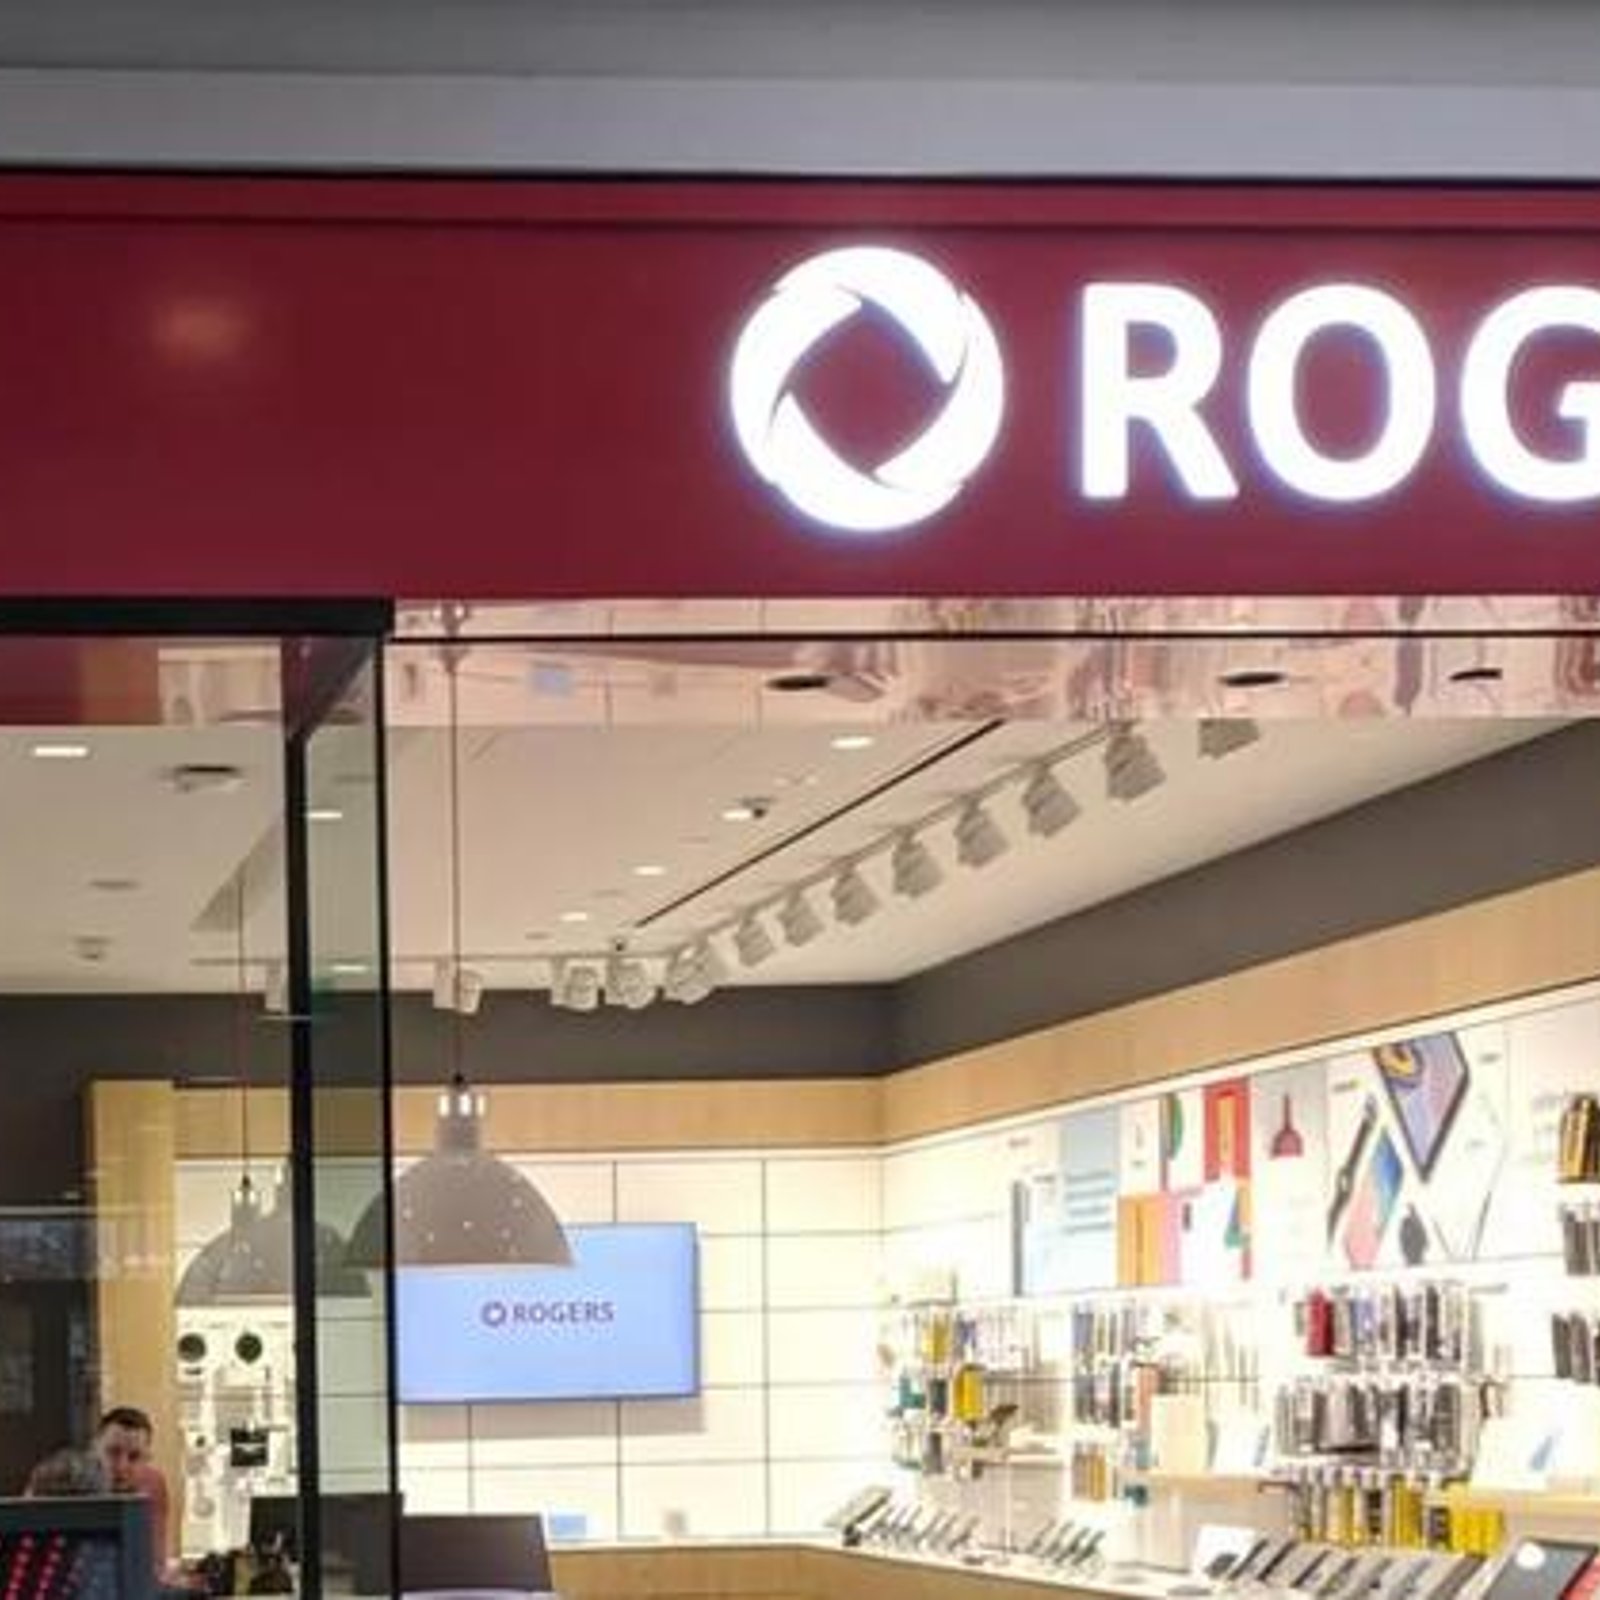 Rogers est l'entreprise qui a reçu le plus de plaintes en télécommunications